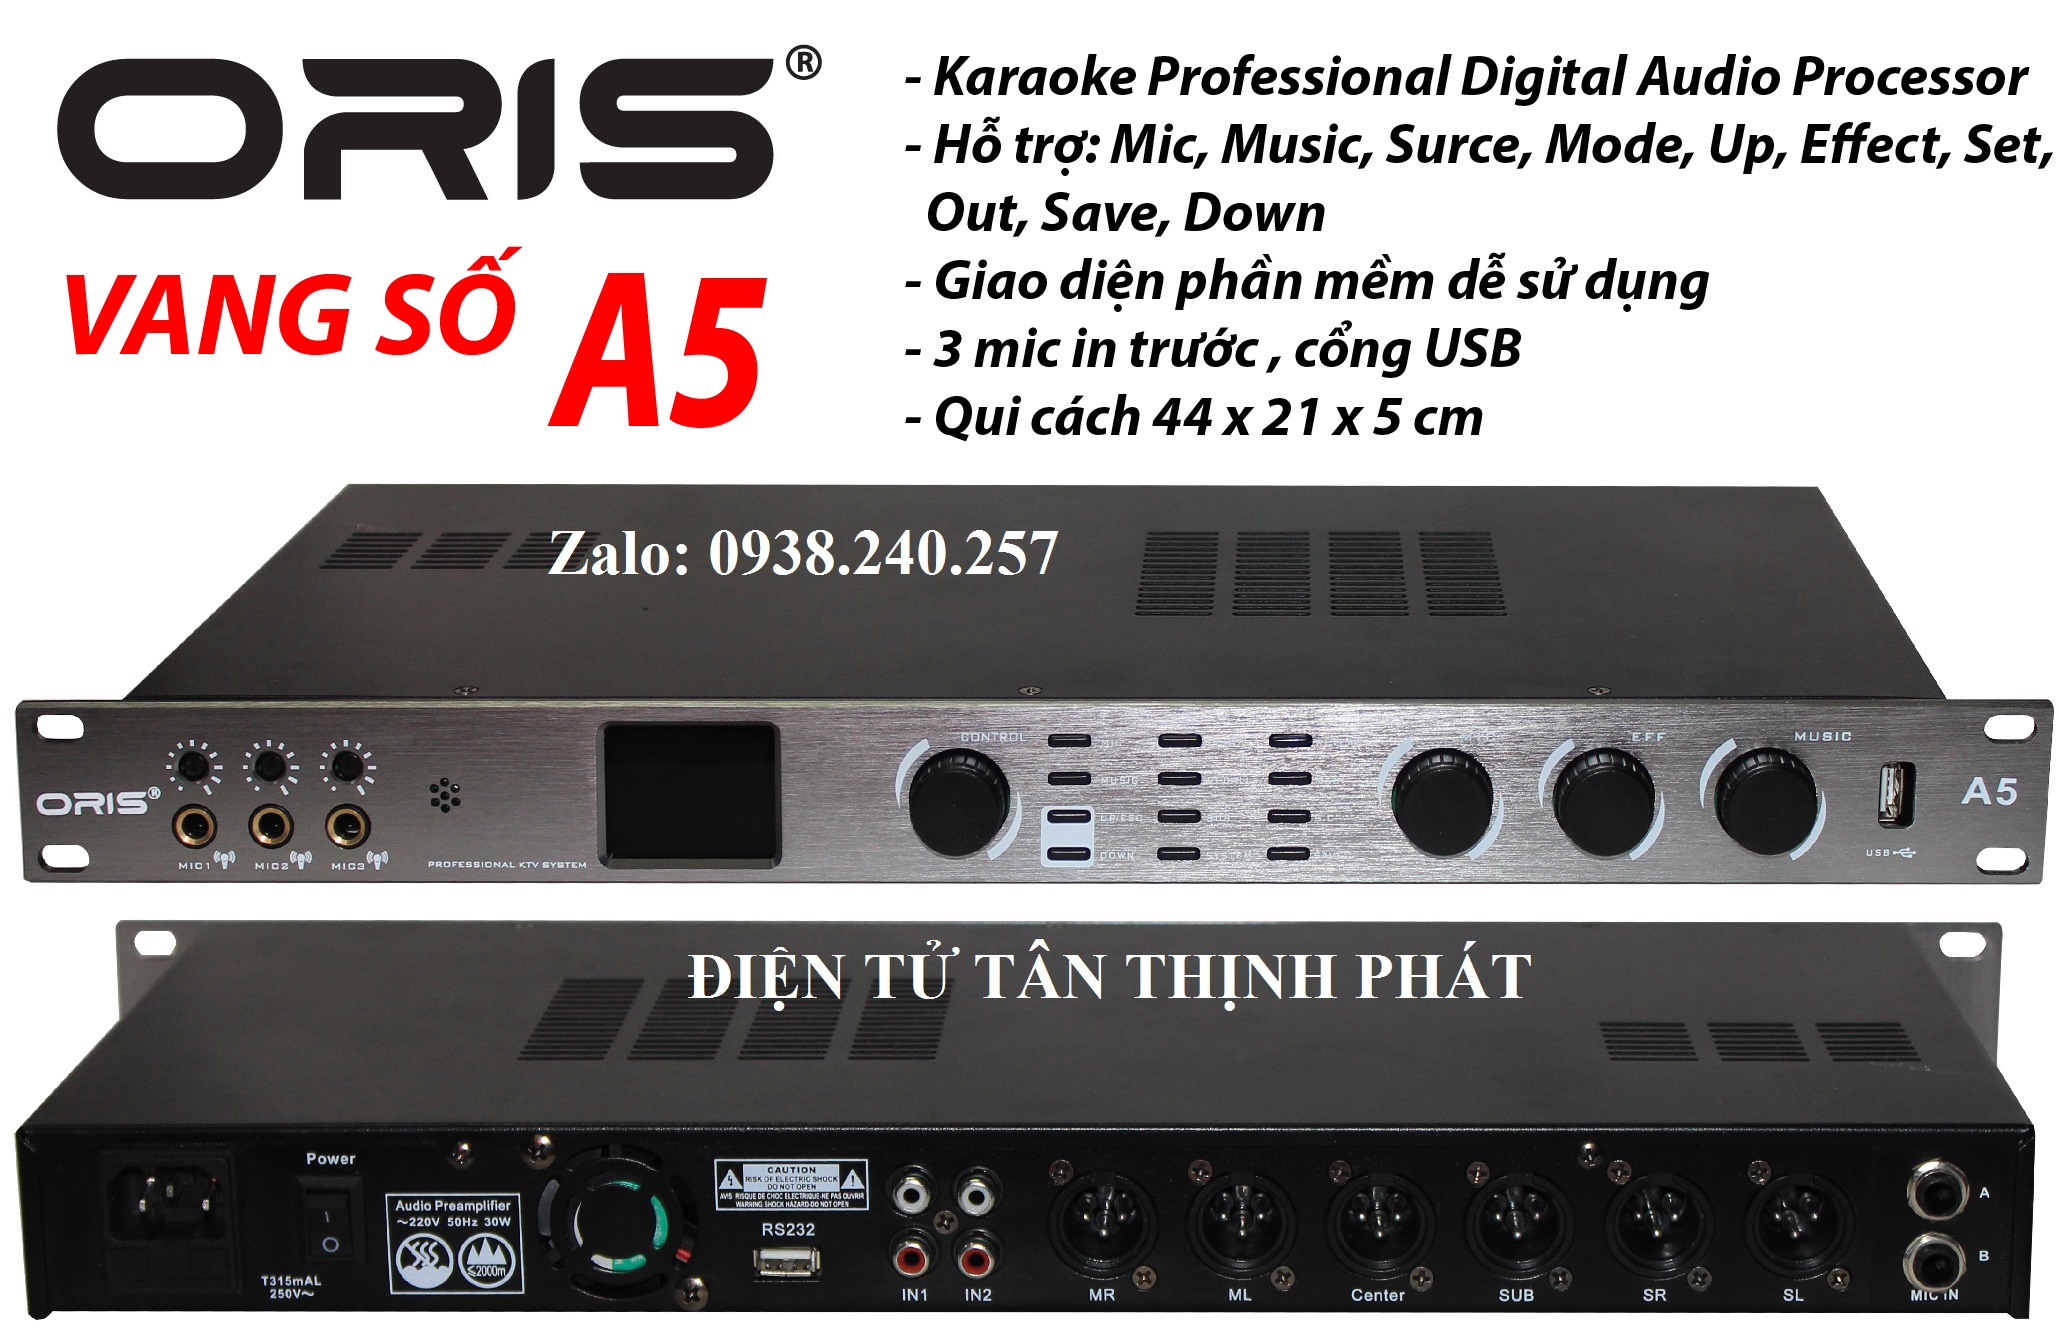 Vang số cao cấp chính hãng ORIS A5 chống hú rít tốt, khả năng xử lý âm thanh chính xác và chi tiết nhất đến từng dải tần